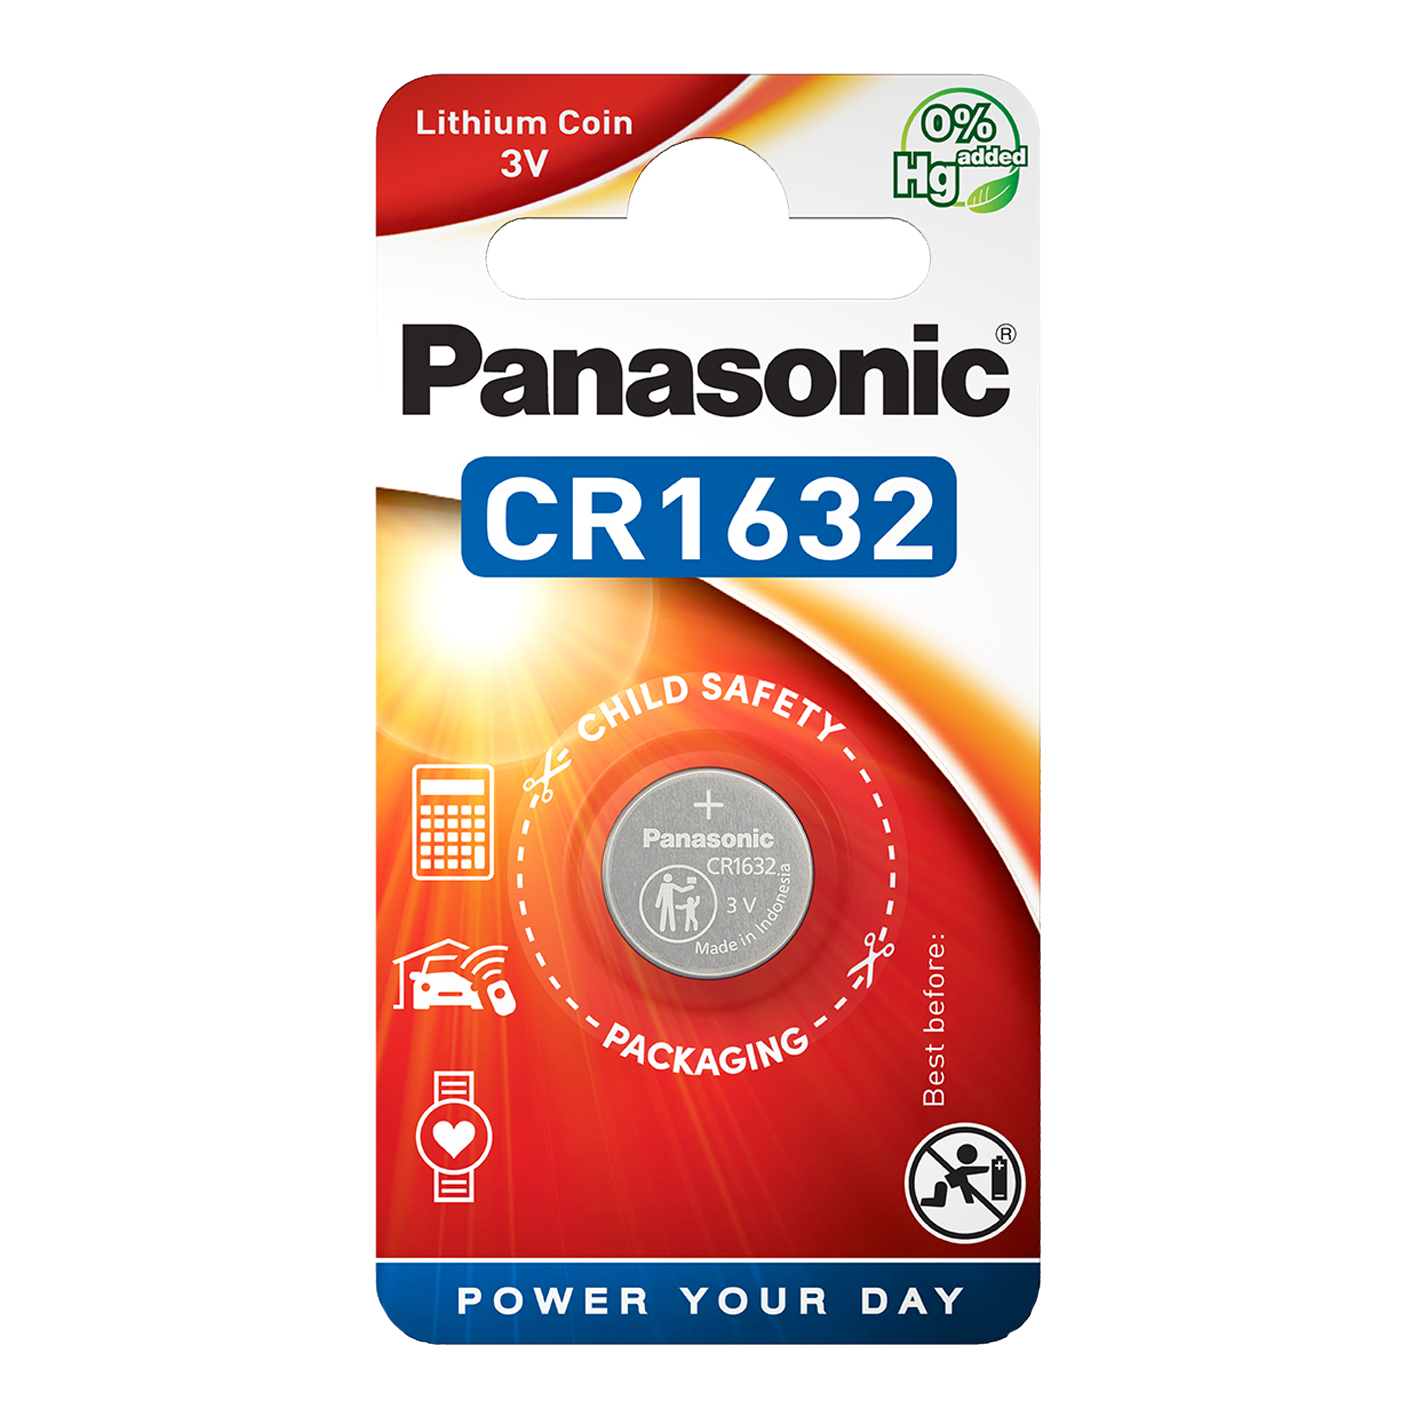 Panasonic CR1632 Litio, paquete de 1